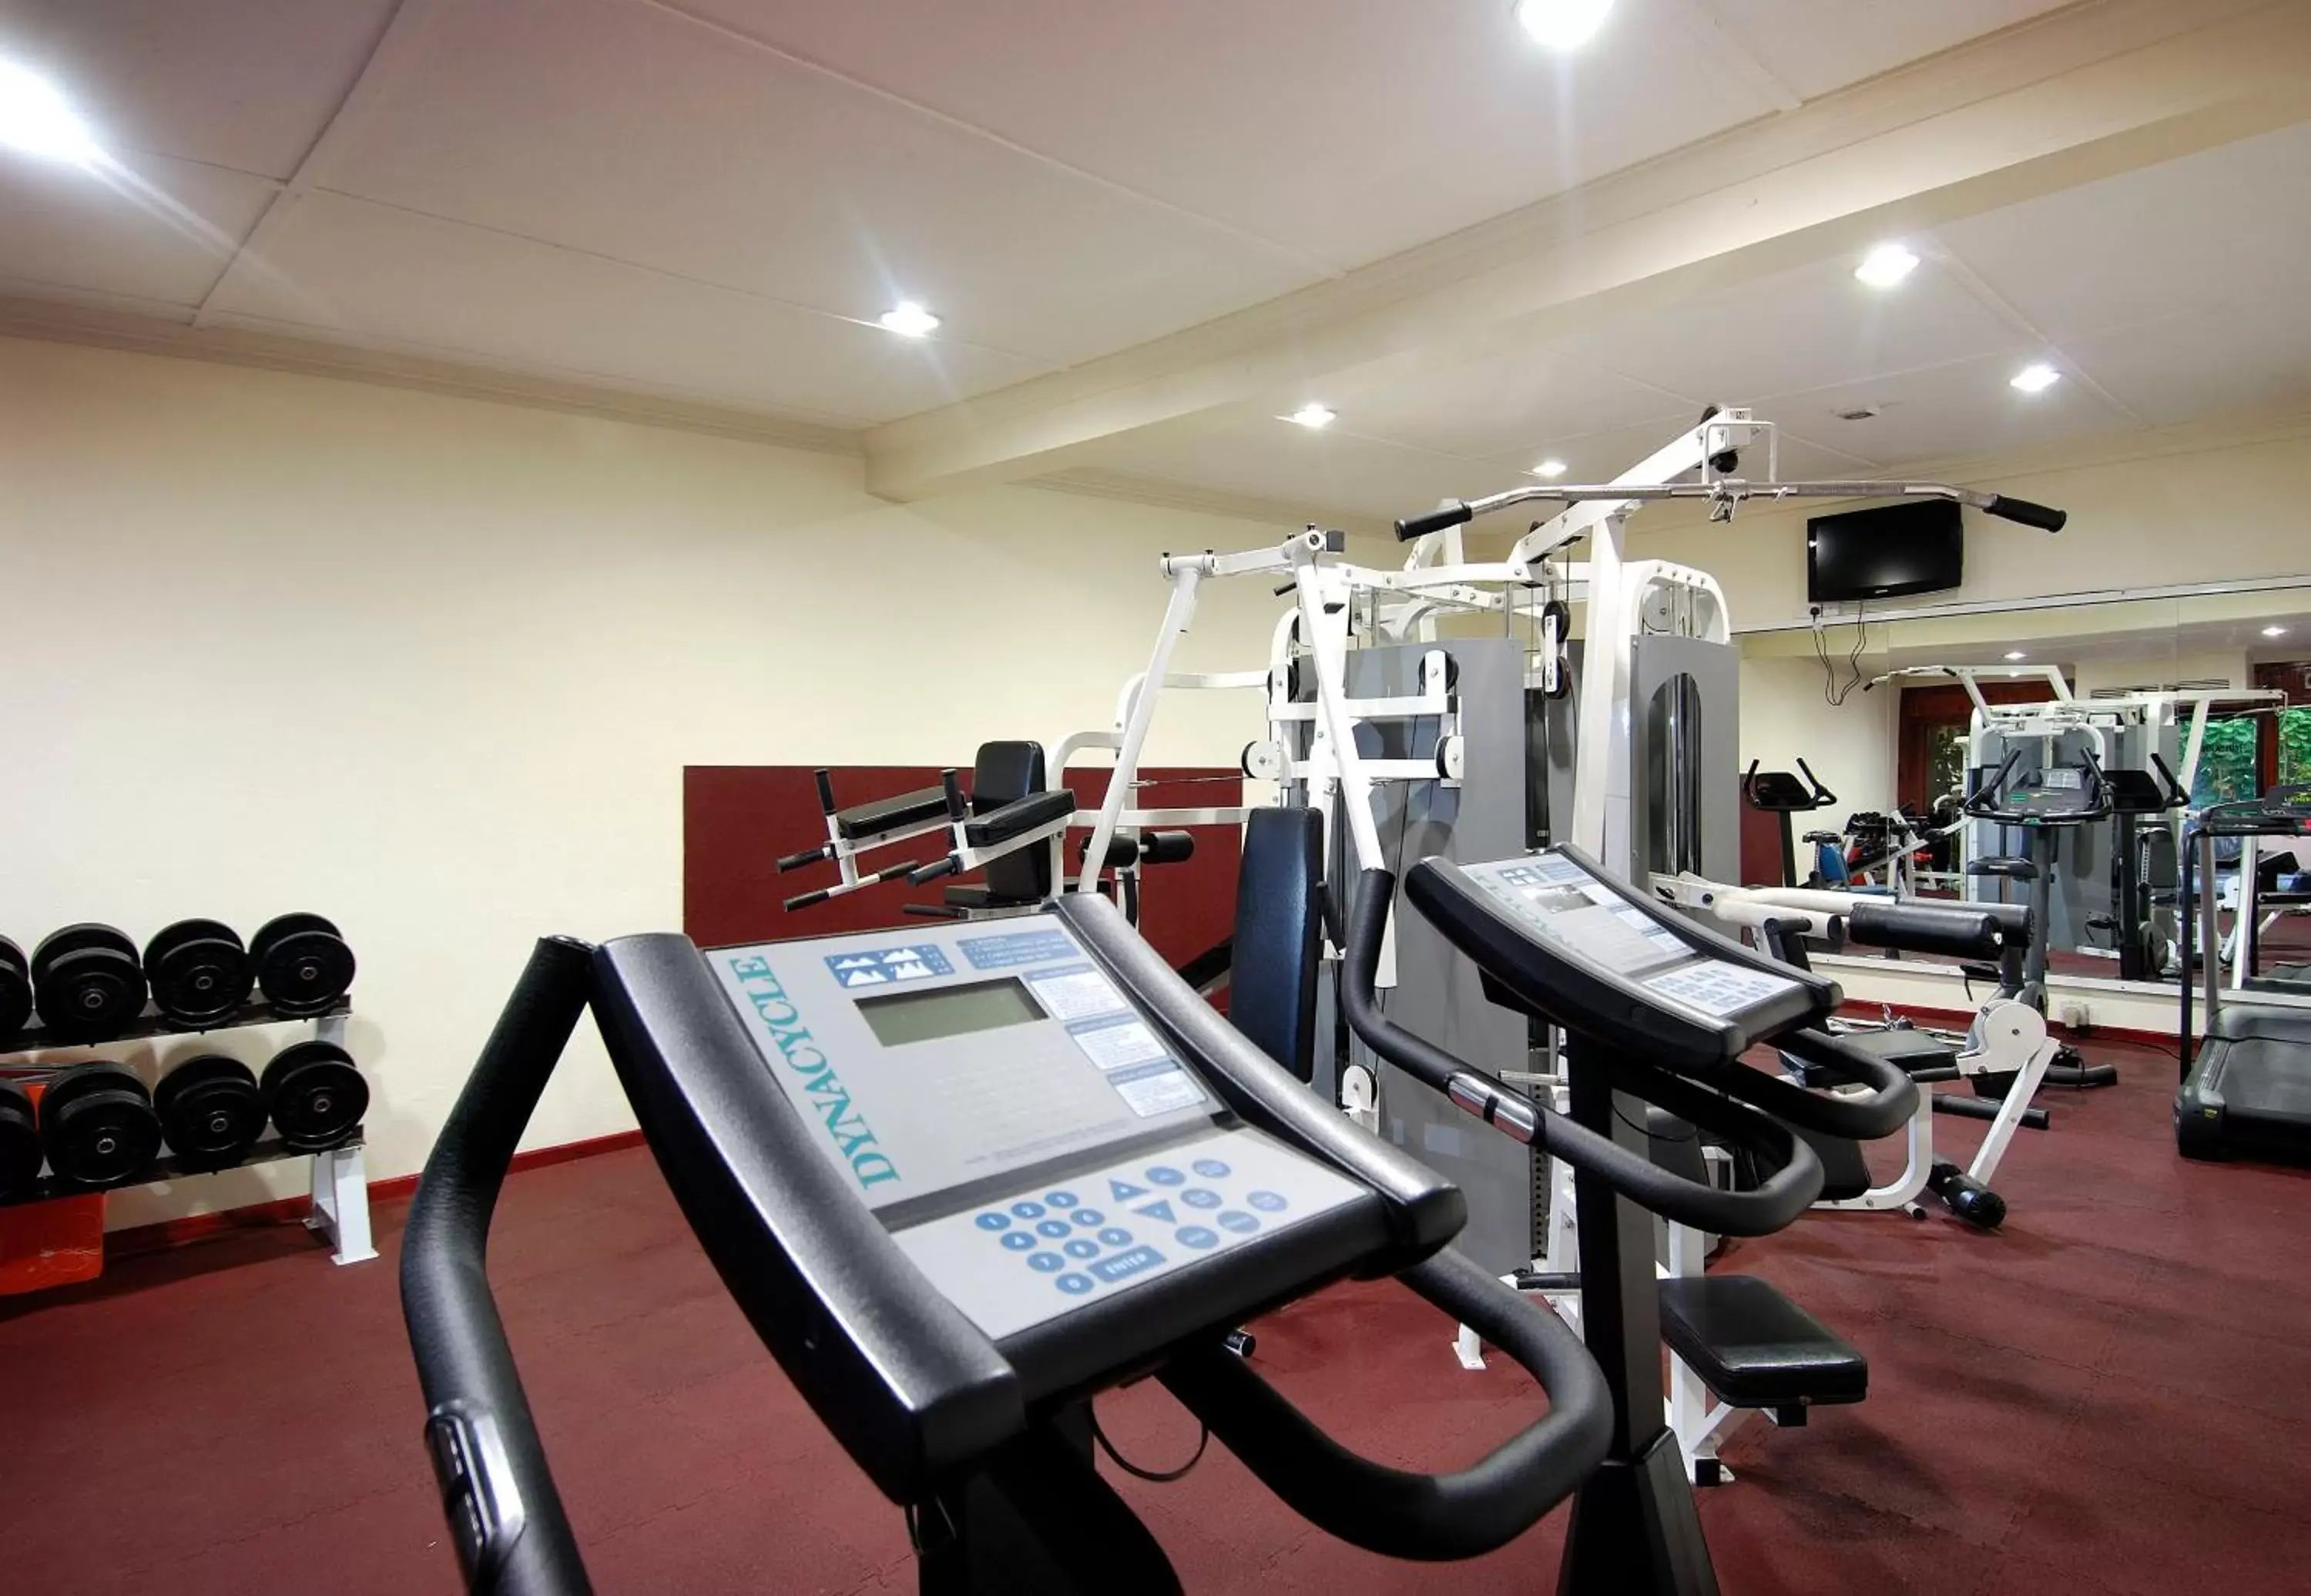 Fitness centre/facilities, Fitness Center/Facilities in Berjaya Beau Vallon Bay Resort & Casino